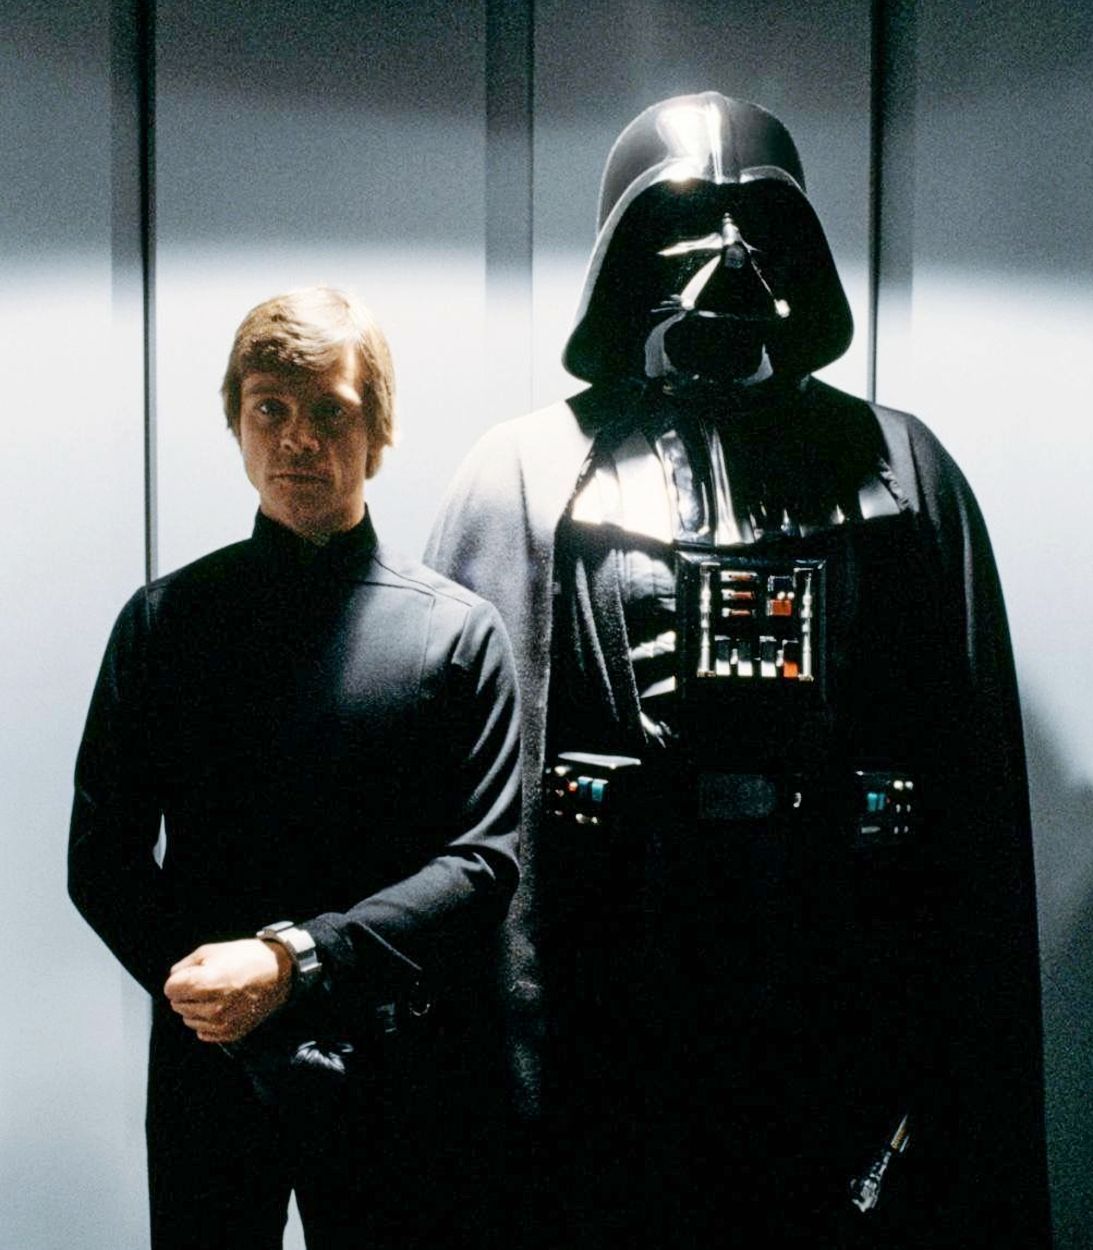 Luke Skywalker and Darth Vader Star Wars Return of the Jedi Vertical